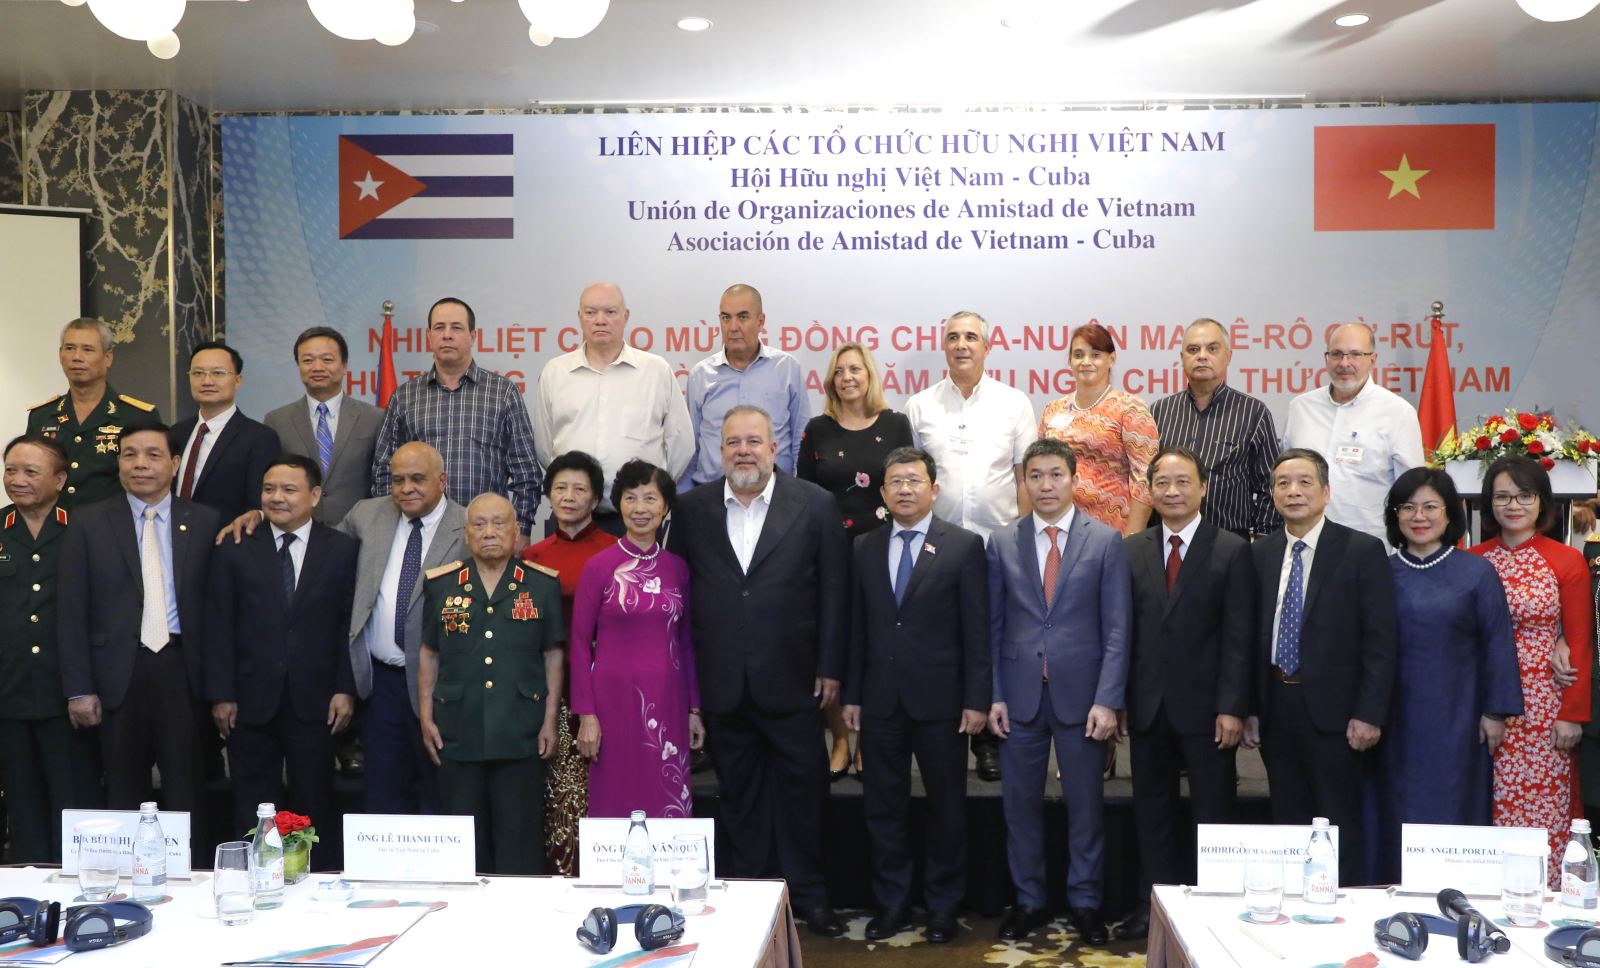 Thủ tướng Cuba tiếp Lãnh đạo Liên hiệp các tổ chức hữu nghị Việt Nam và Hội Hữu nghị Việt Nam - Cuba